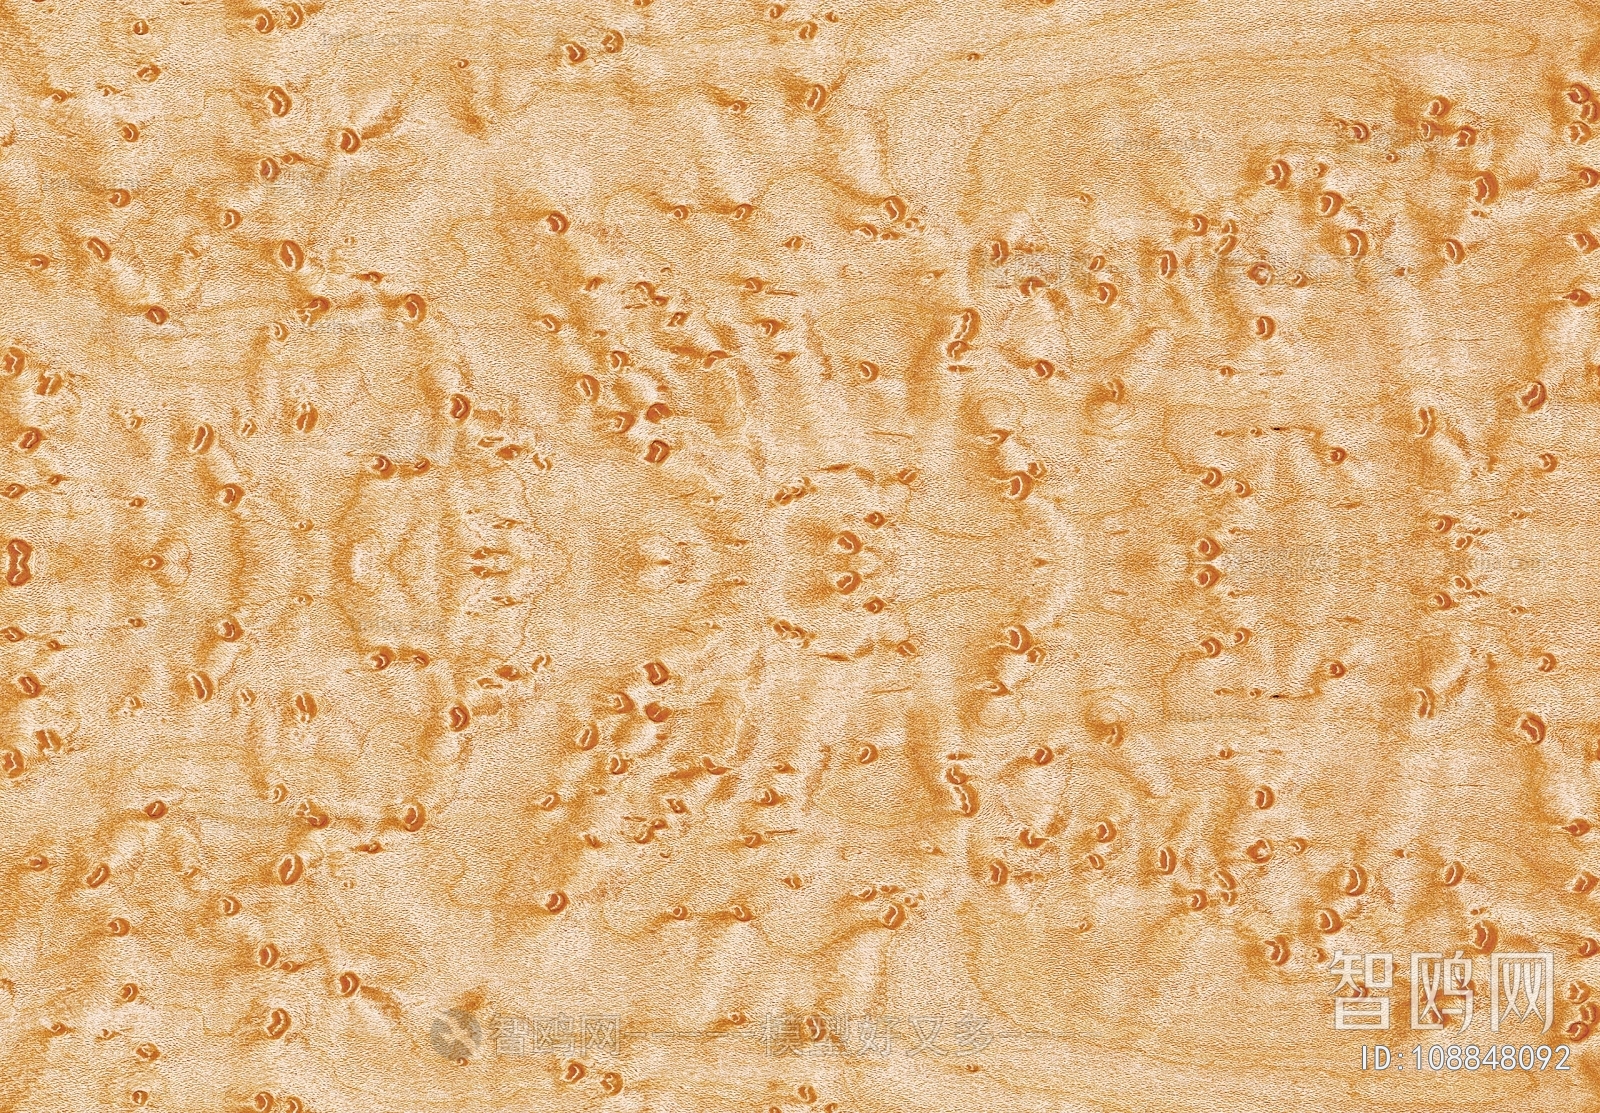 木饰面科技木板